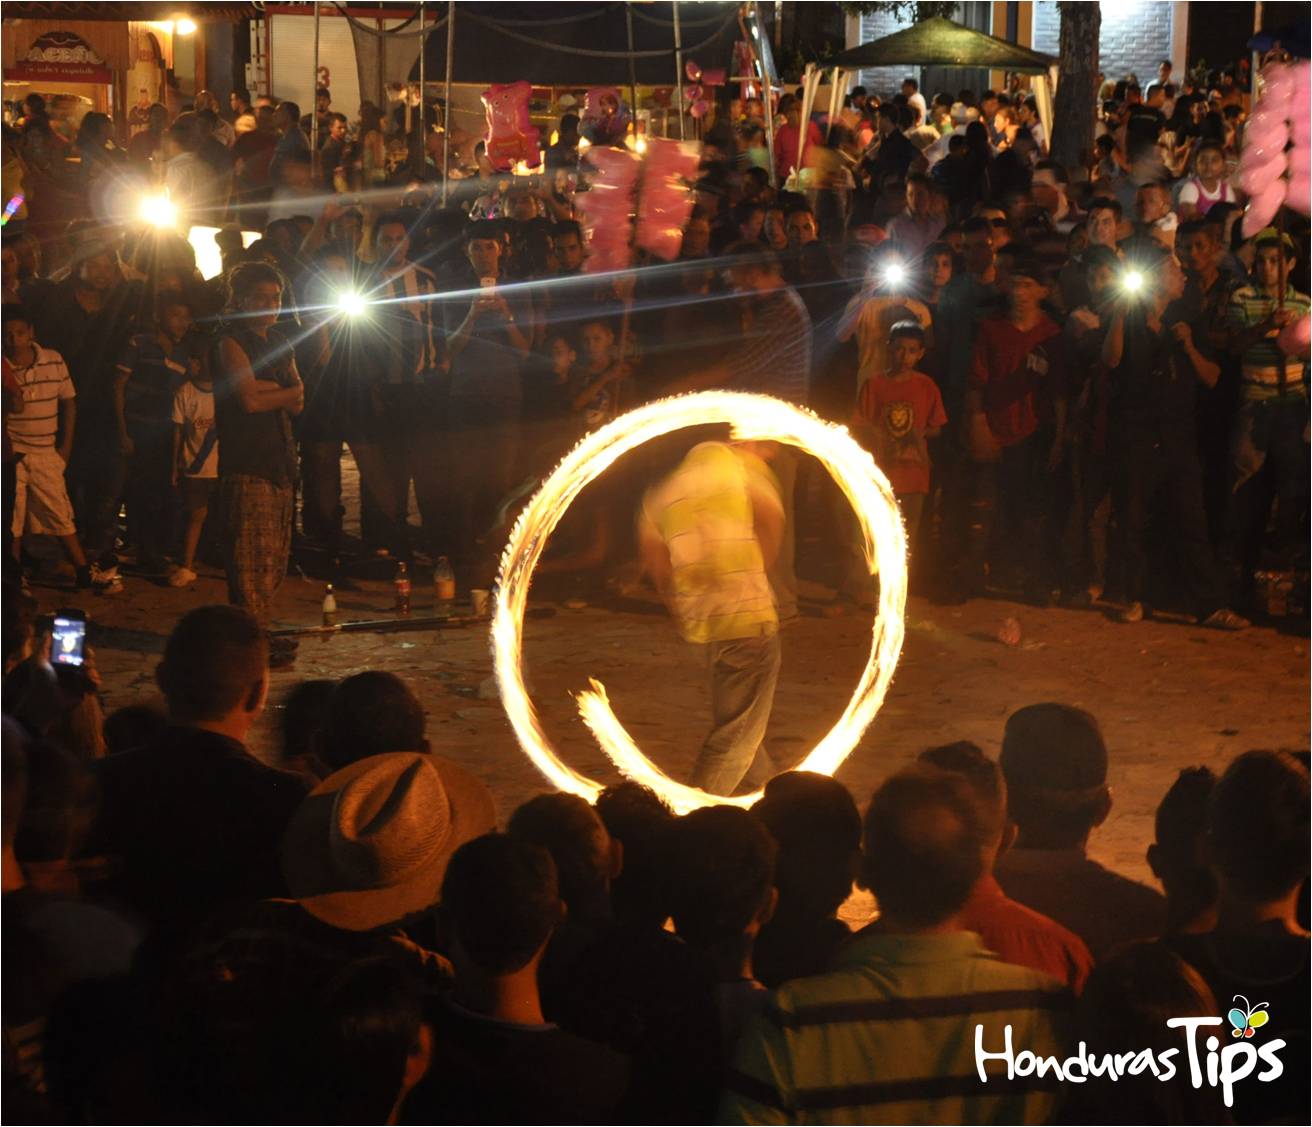 Un grupo de jóvenes de San Pedro Sula, Copán Ruinas y Tegucigalpa, animaron a los asistentes de la feria, con un espectáculo de baile con fuego.